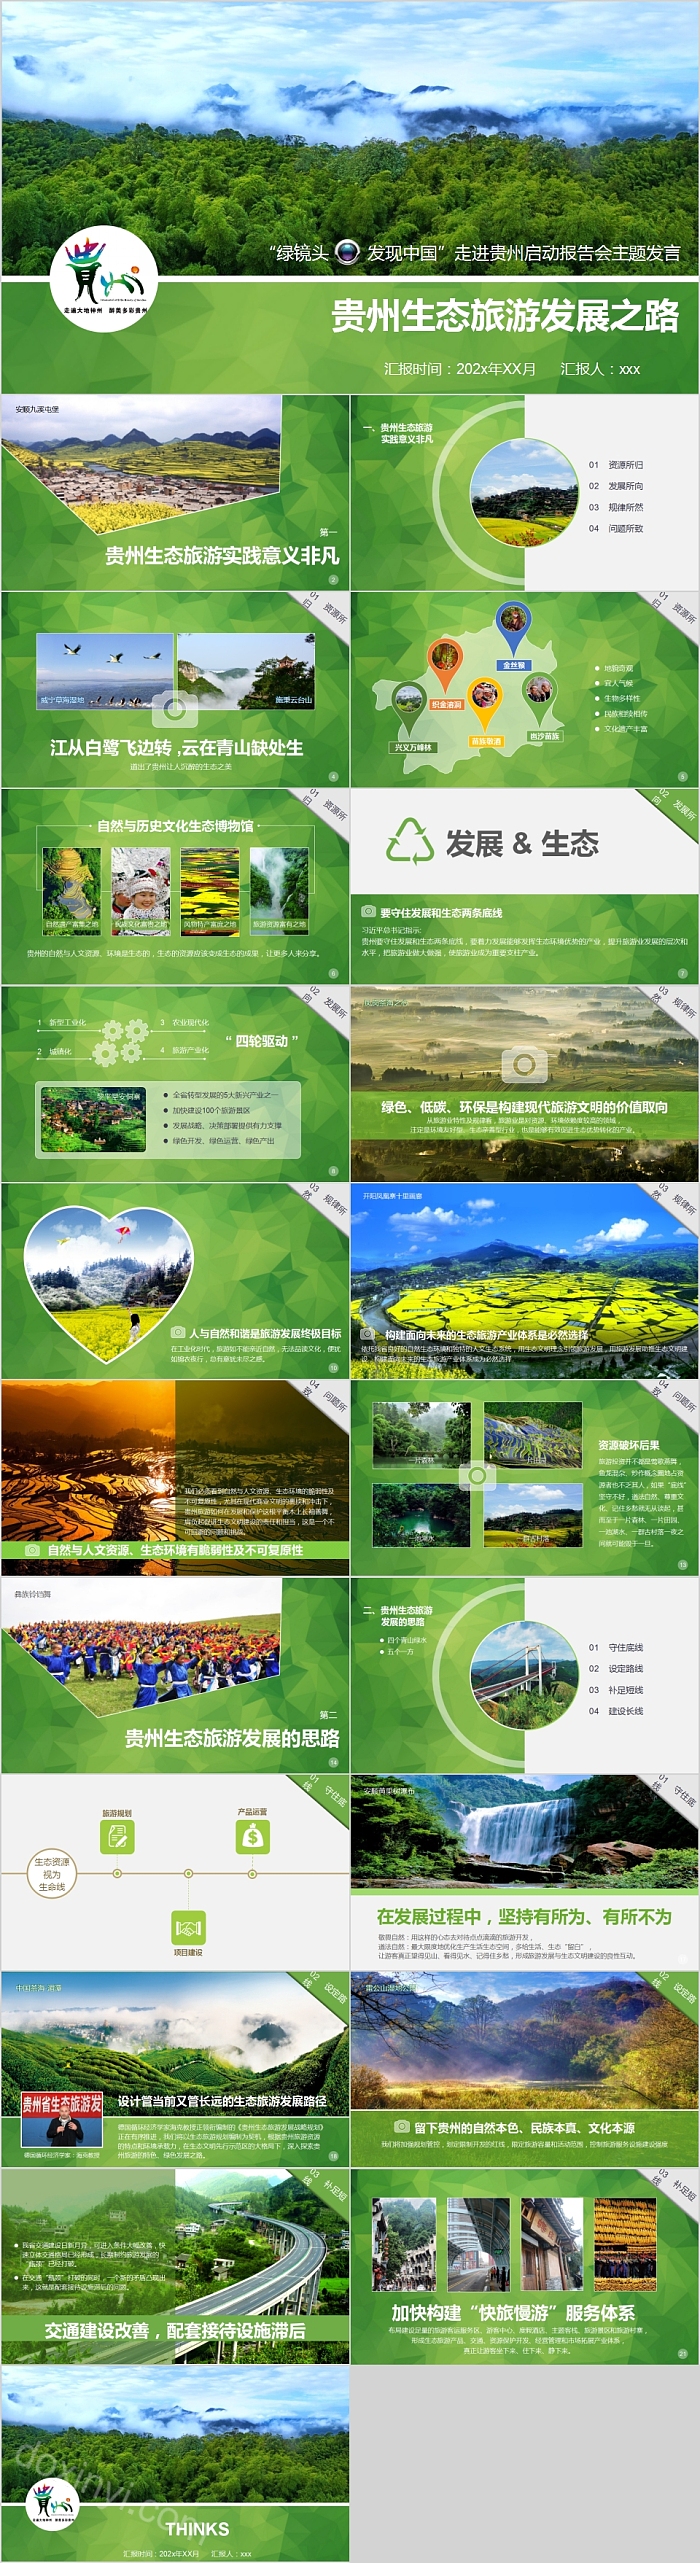 贵州生态旅游发展之路PPT模板